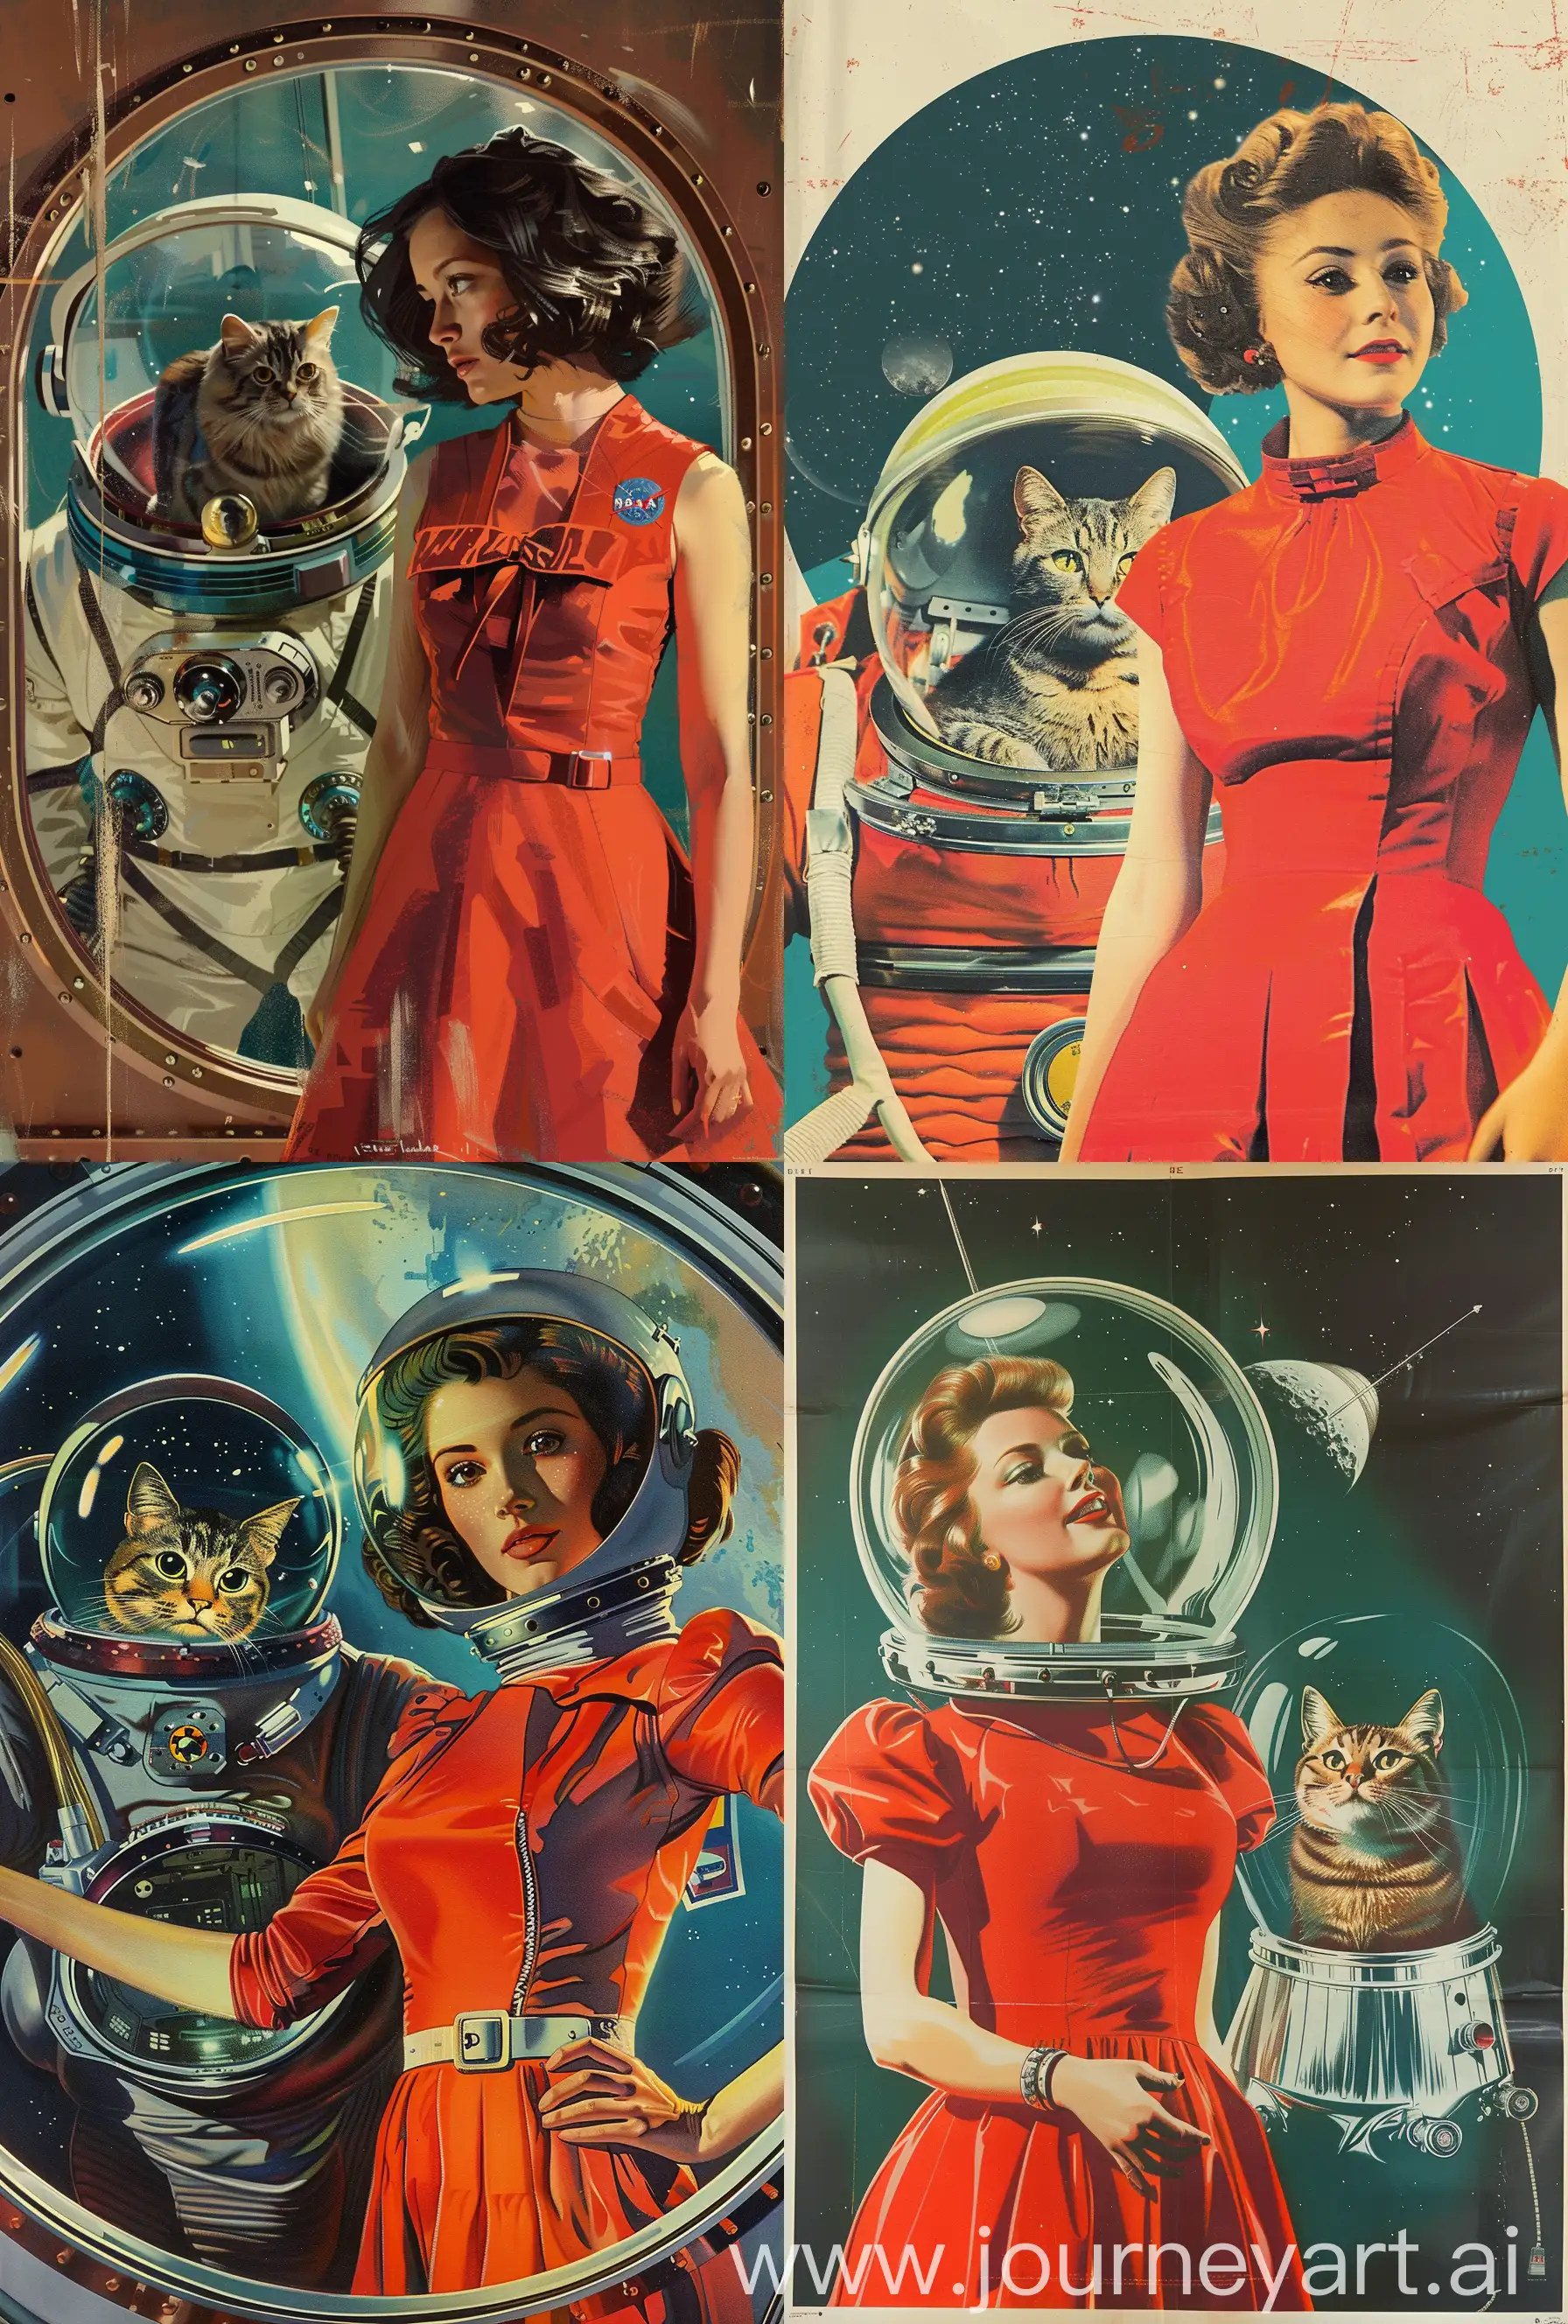 a 1960s style sci fi movie poster. 
Девушка космическая путешественица с котом в скафандре. На девушке красное платье. Космическая одиссея 
—ar 27:40